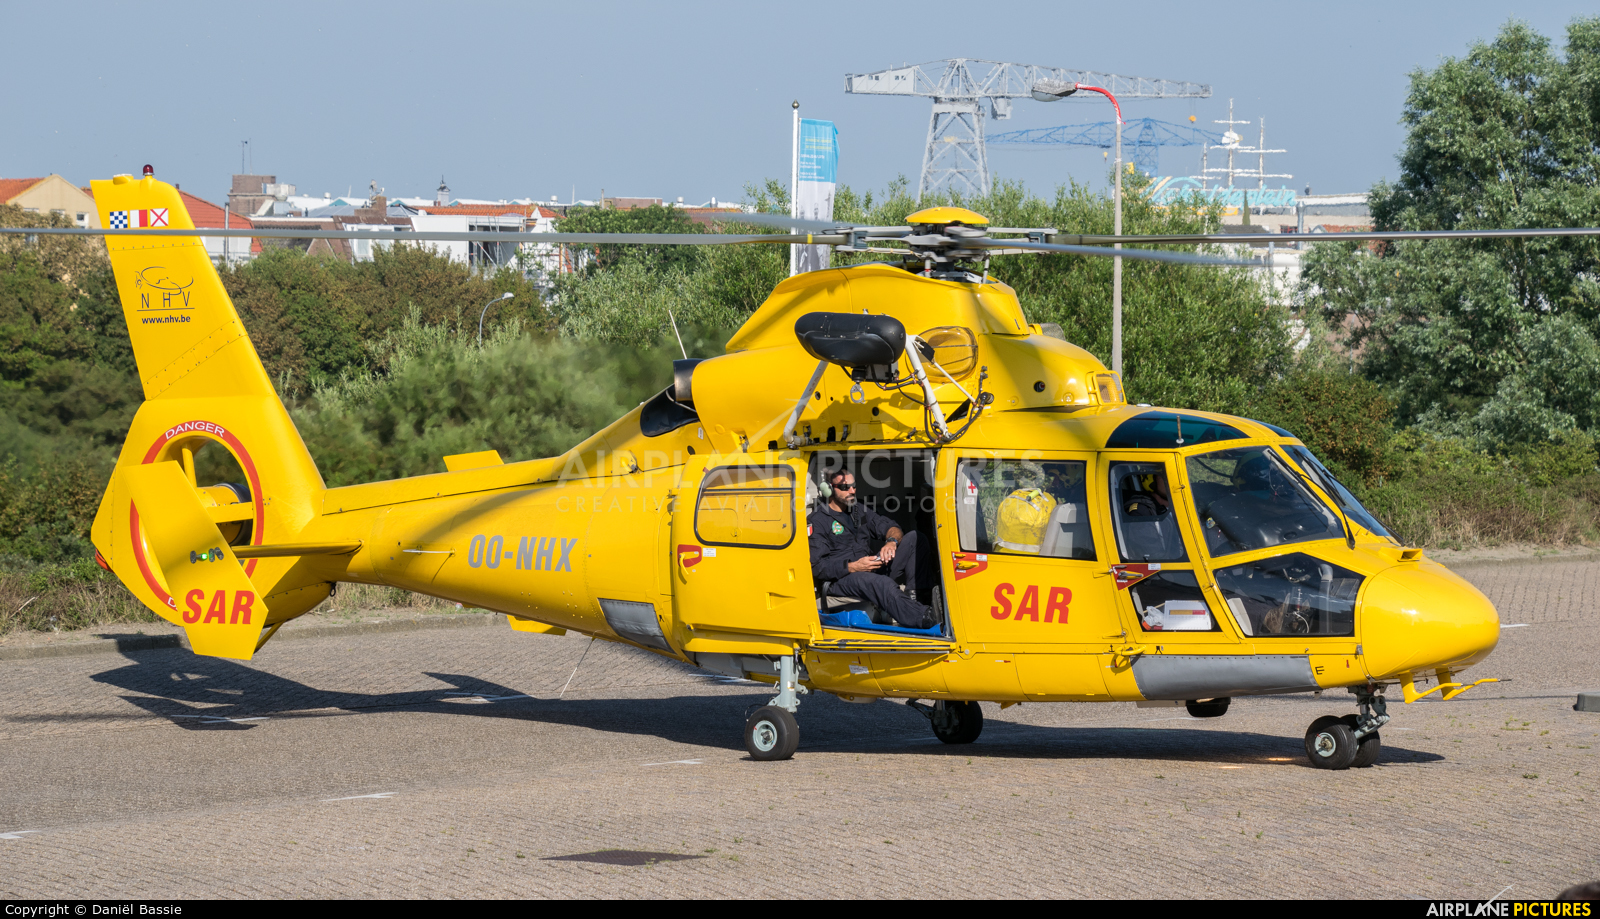 NHV - Noordzee Helikopters Vlaanderen OO-NHX aircraft at Off Airport - Netherlands